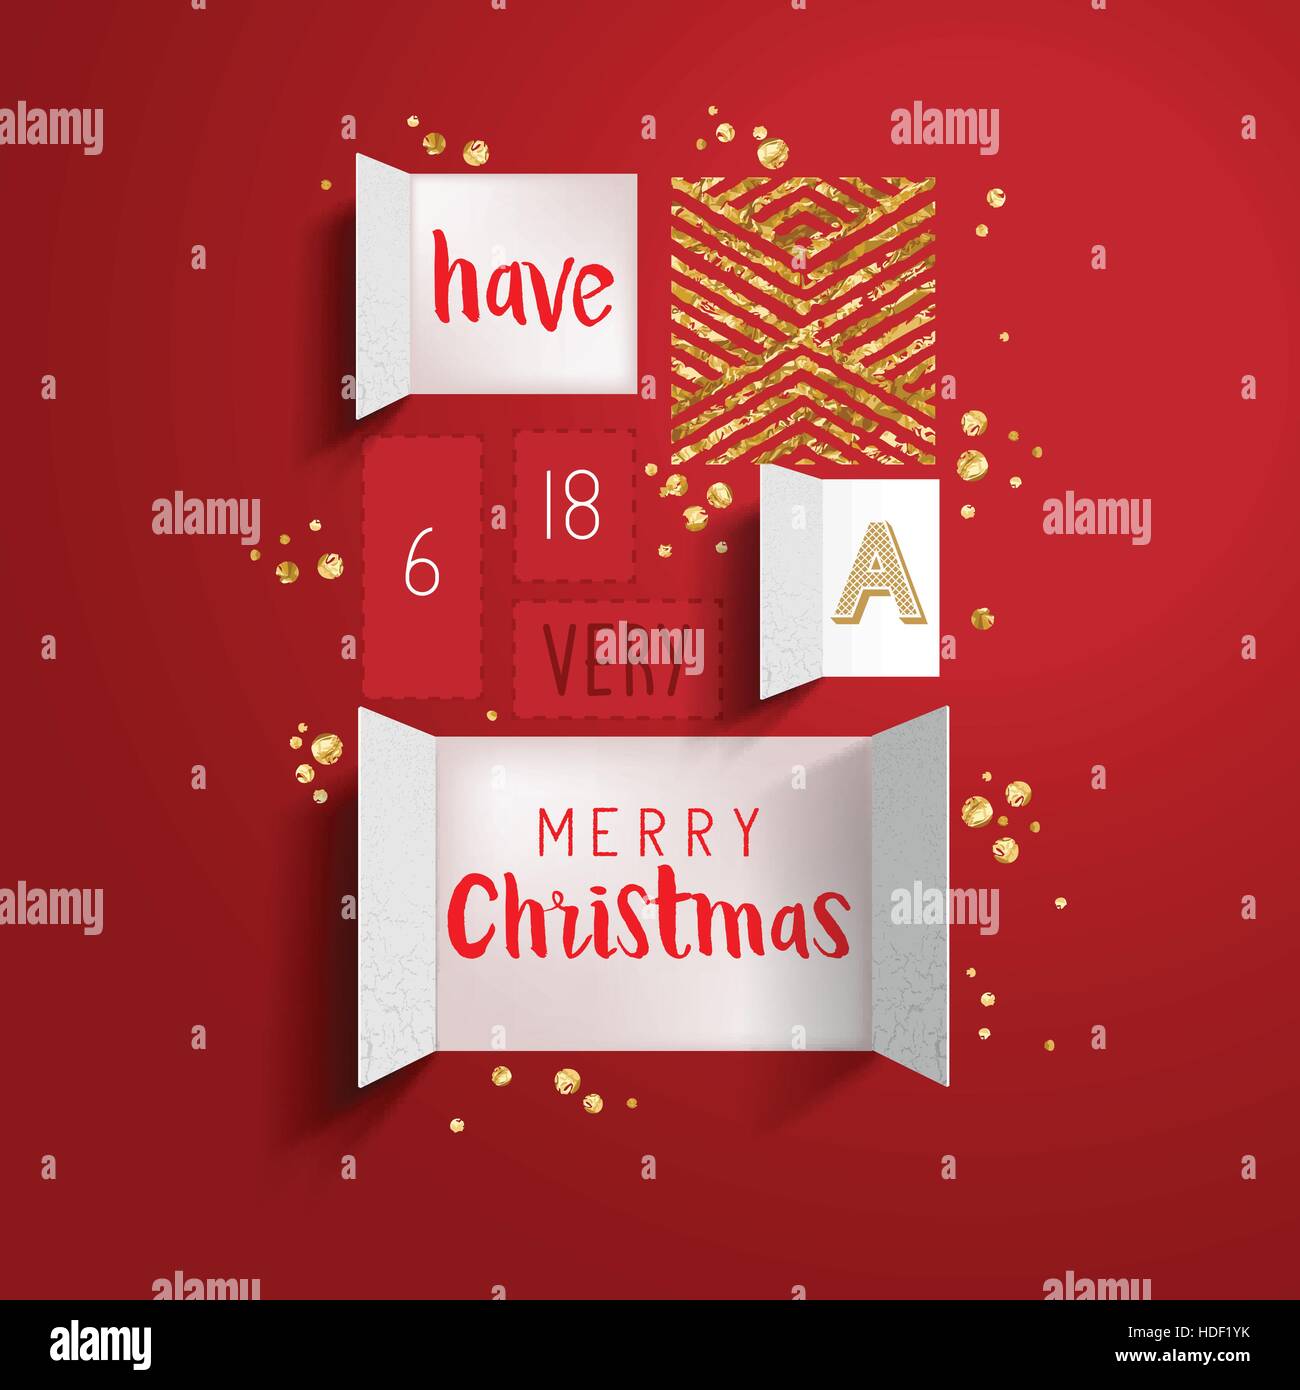 Weihnachten Advent Kalender Türen zu öffnen, um eine festliche Nachricht mit goldenen Details zu offenbaren. Vektor-illustration Stock Vektor